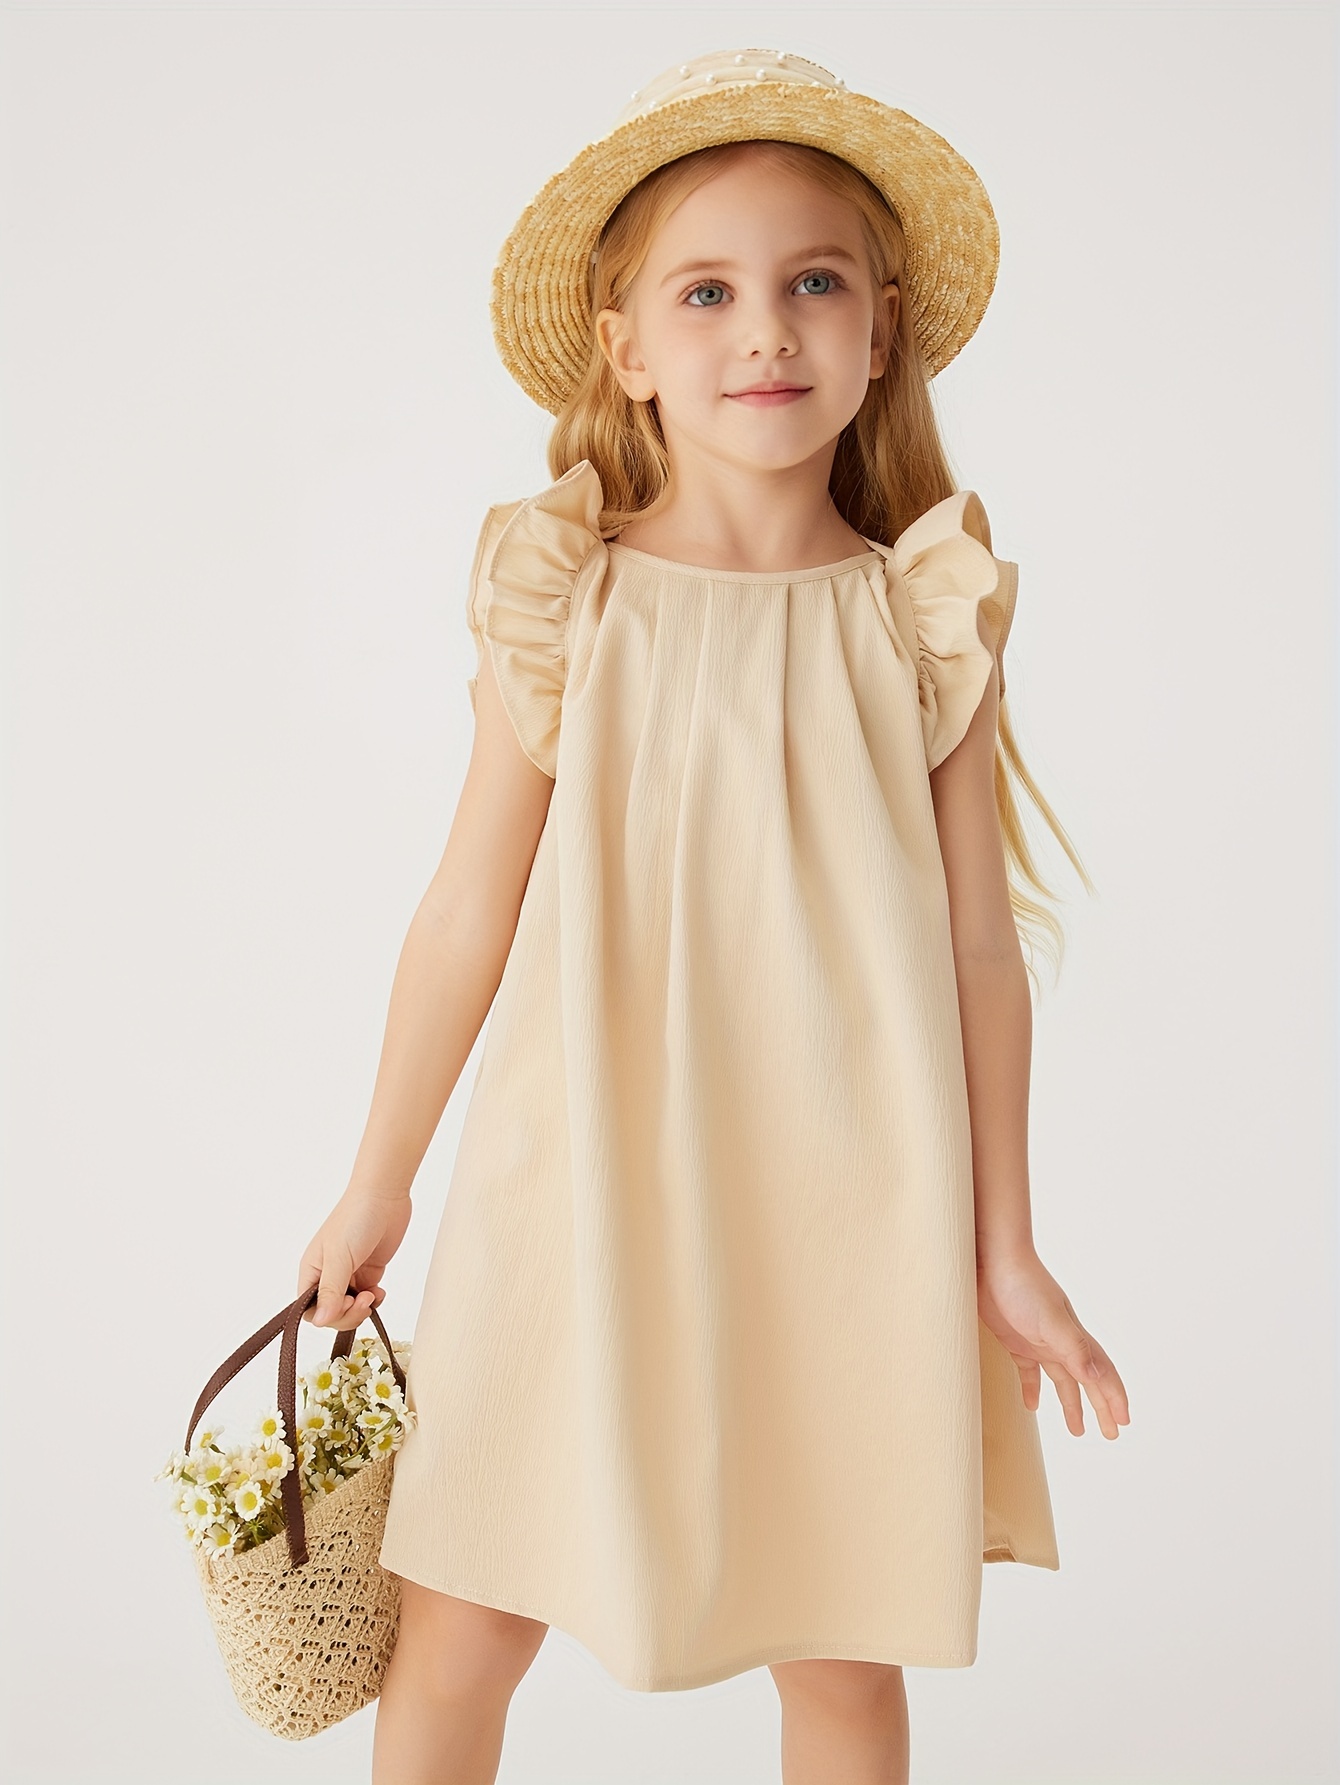 Vestidos de niña 2 años, para primavera y verano, color liso, con volantes,  sin mangas, vestido de princesa (verde, 3-4 años)